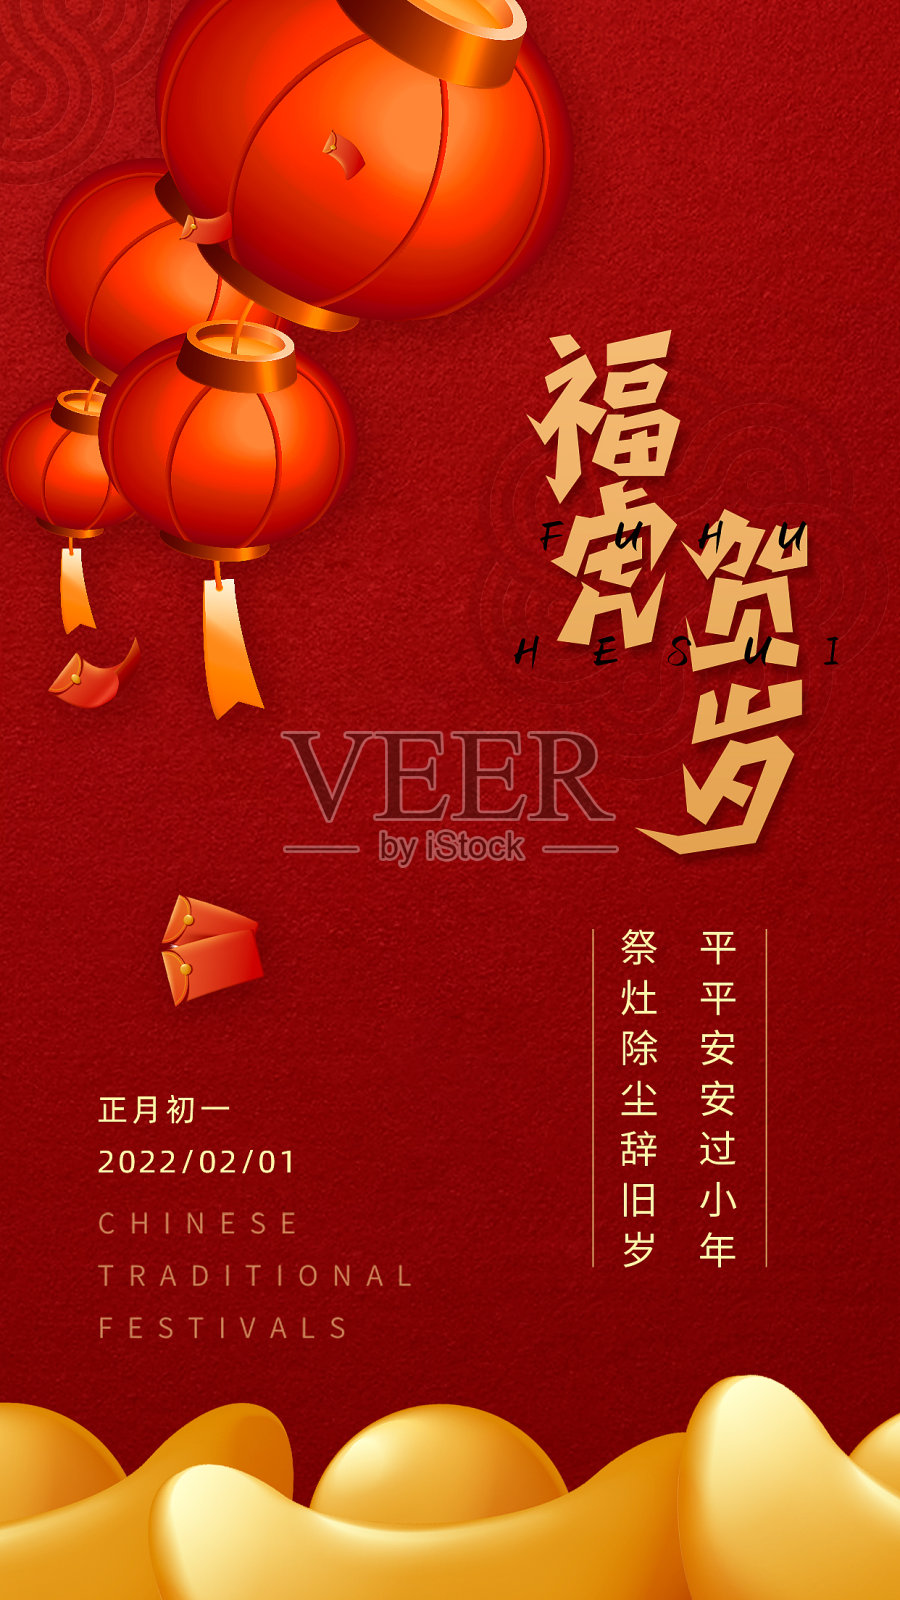 红色简约大气福虎贺岁春节手机海报设计模板素材